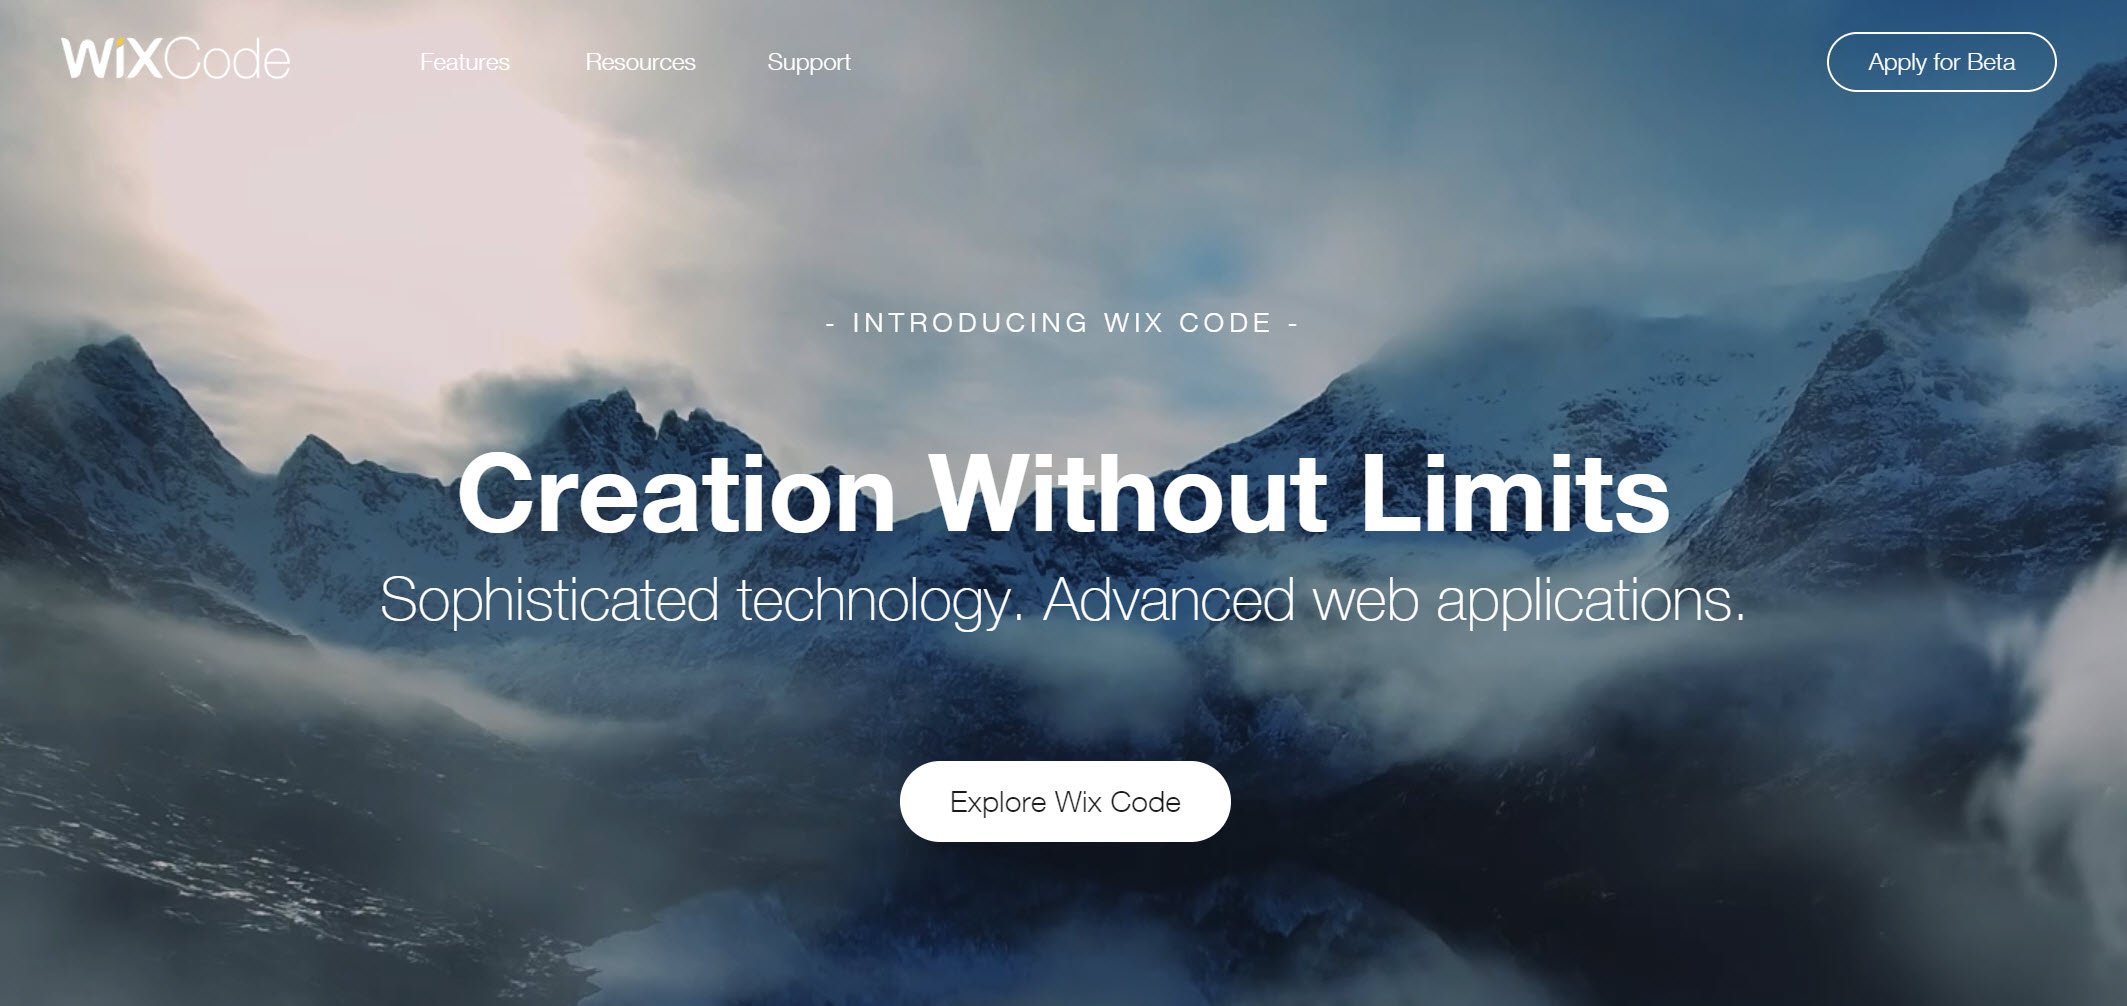 Innovador: Wix Code acelera enormemente la creación de aplicaciones web